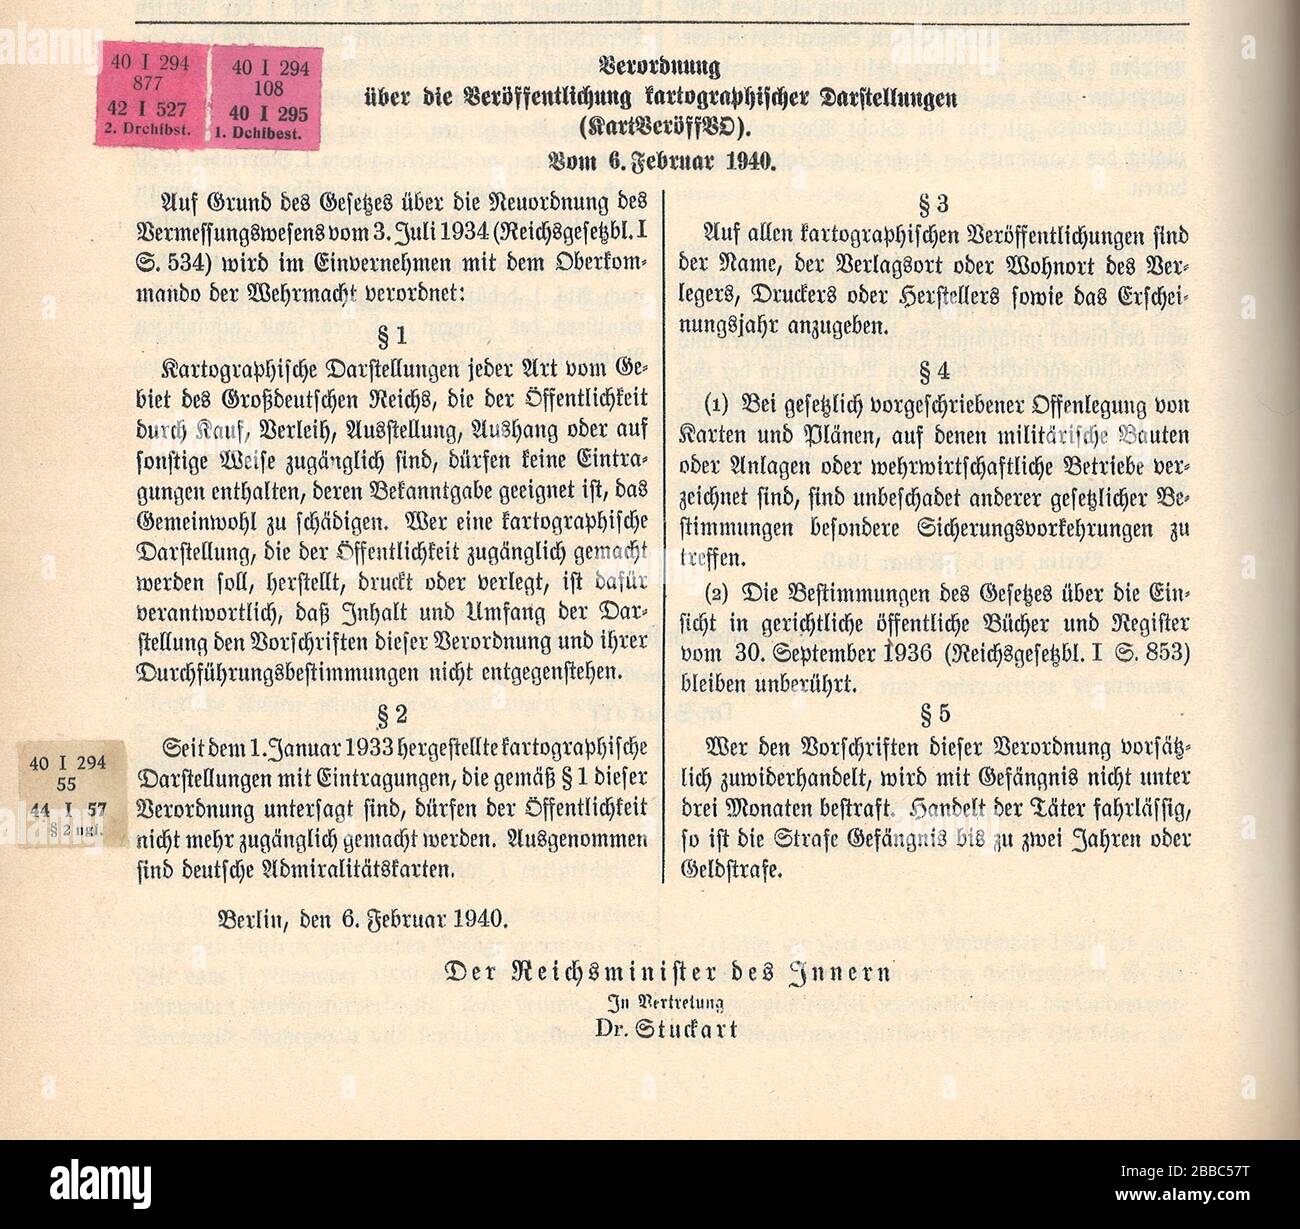 'Deutsch: RGBl. I 1940 S. 294 VO 6.2.1940 über die Veröffentlichungen kartograpischer Darstellungen; 22 April 2014; Scan von RGBl. I 1940 S. 294 VO 6.2.1940; heied; ' Stock Photo